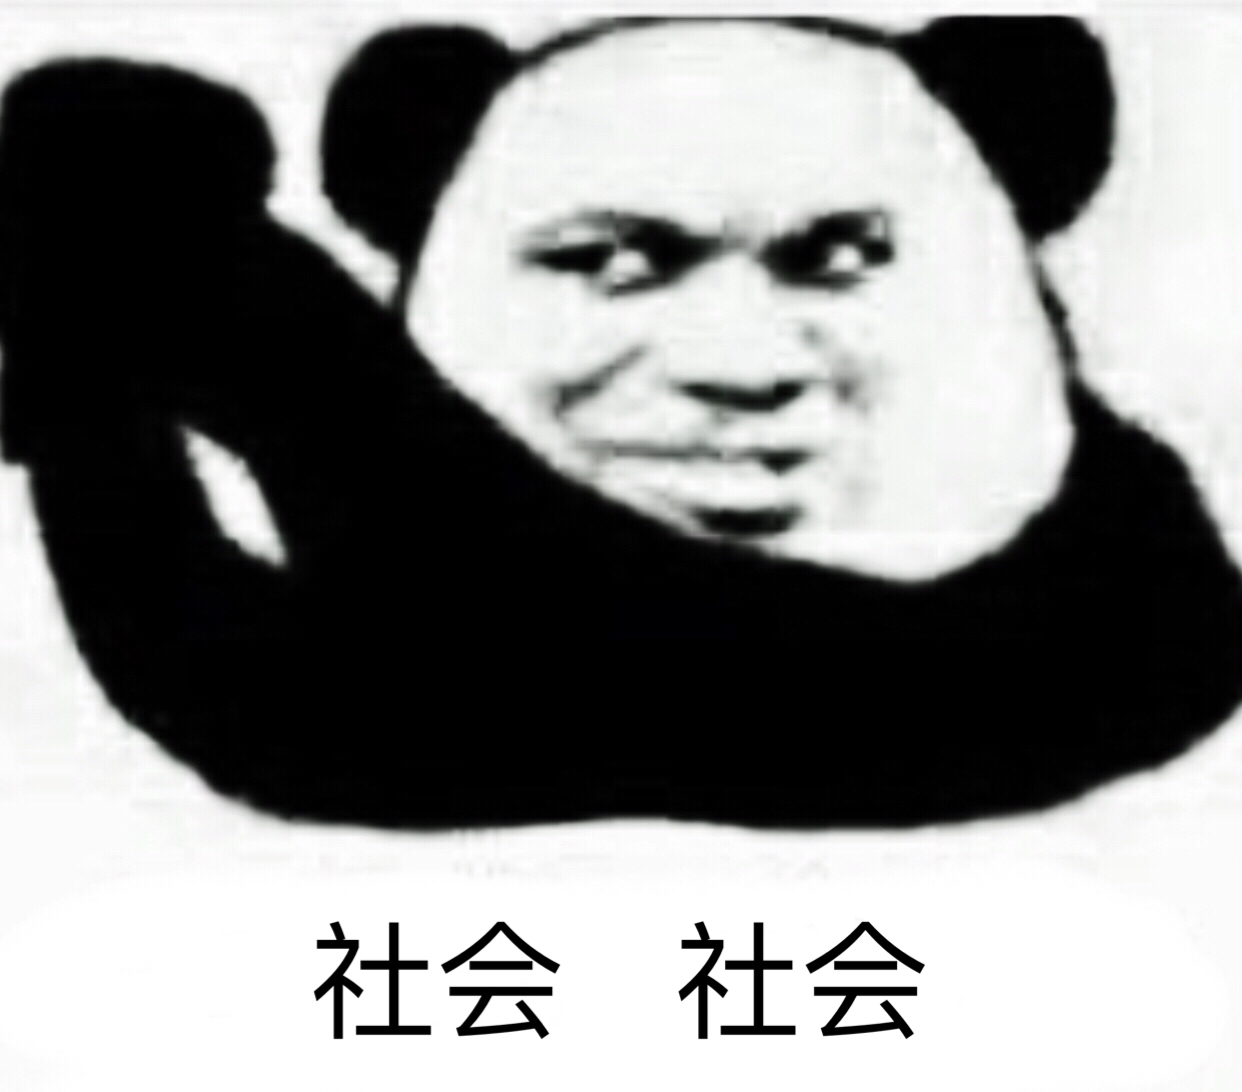 熊猫头 社会社会 斗图 抱拳 搞笑